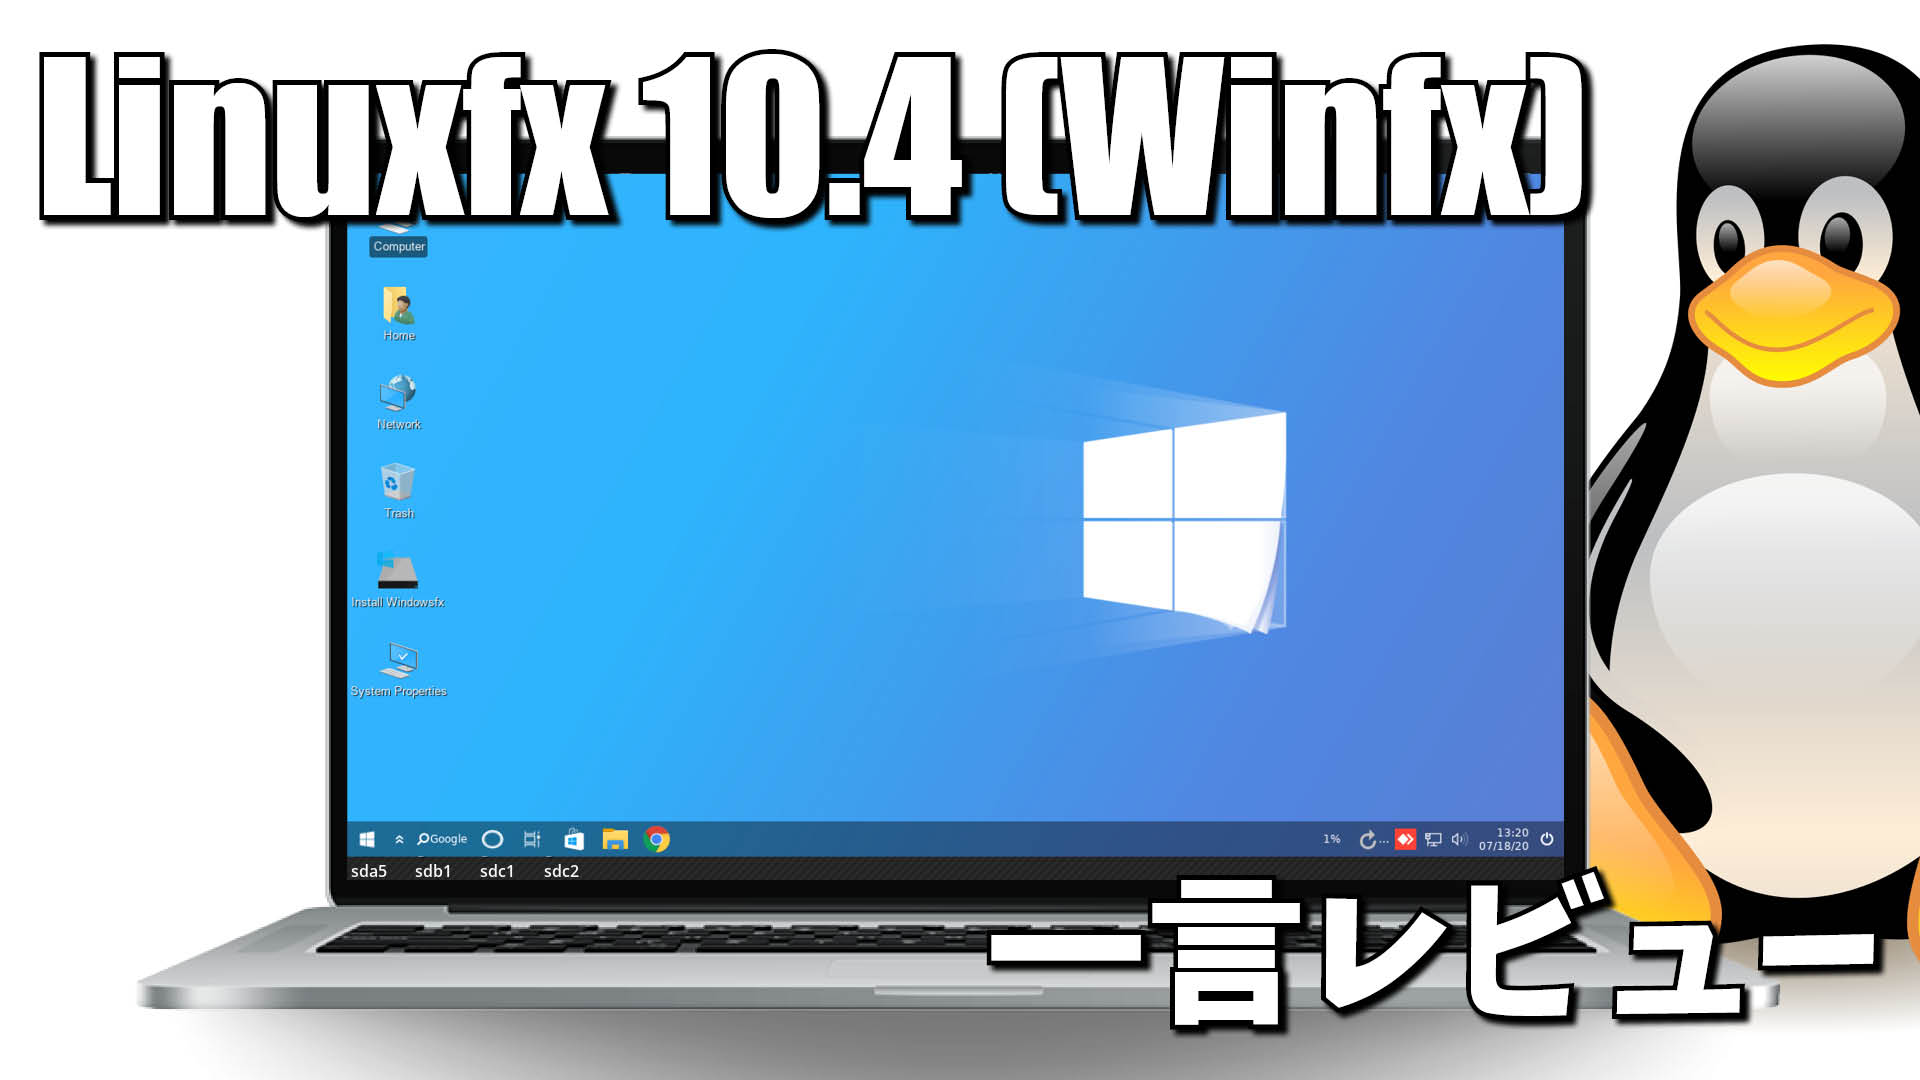 一言レビュー: Linuxfx 10.4 (Winfx)